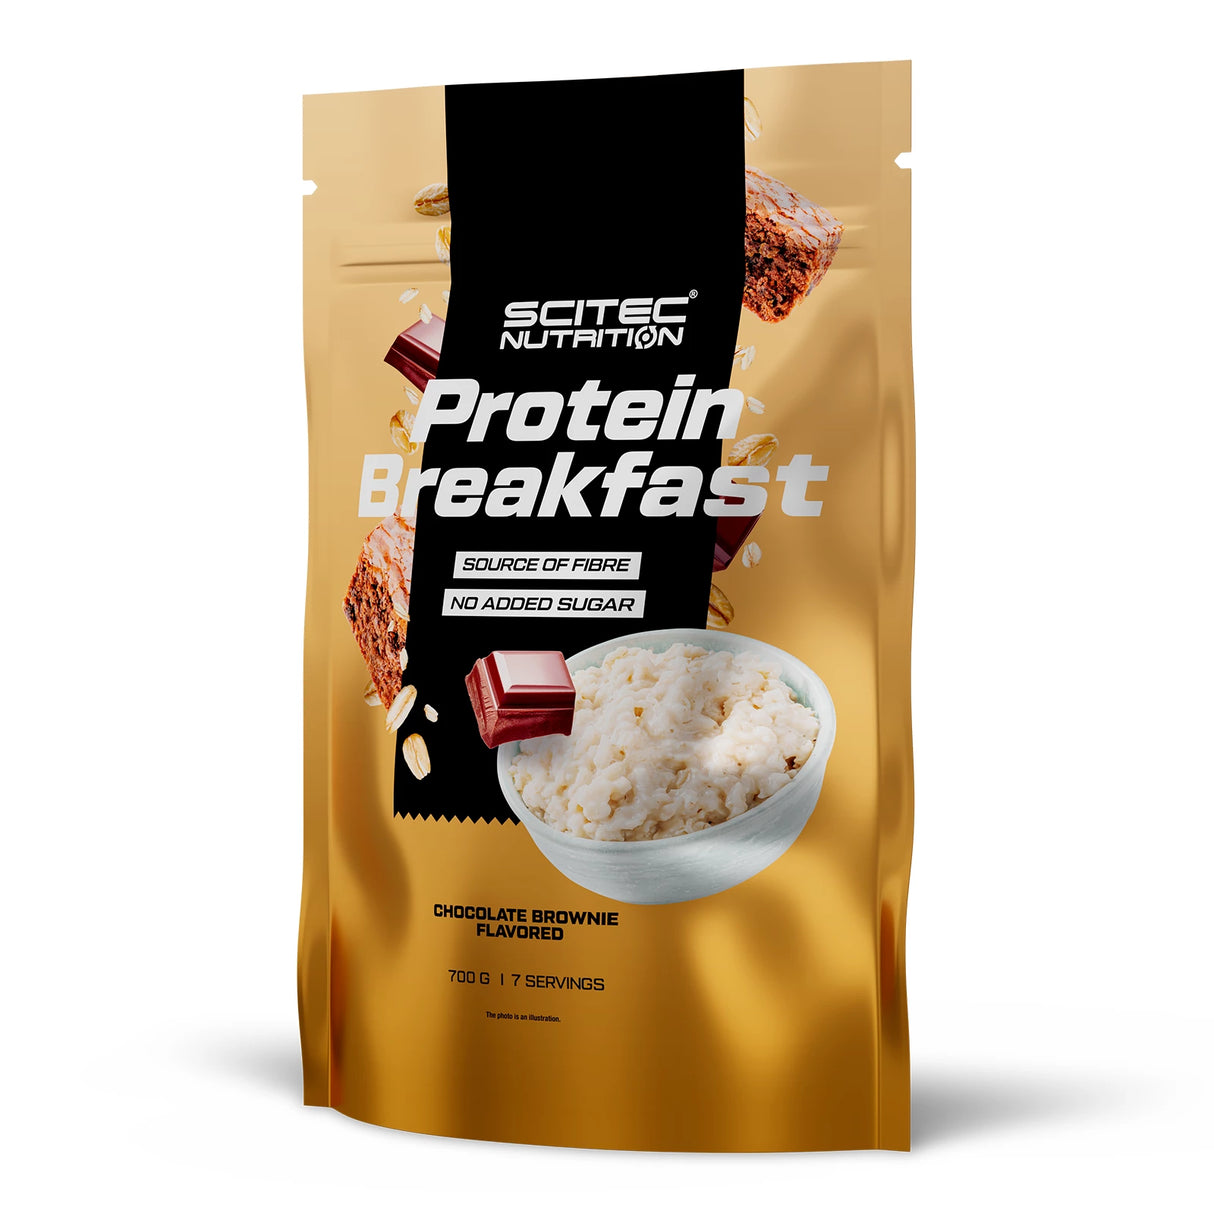 PROTEIN BREAKFAST - 700G Scitec Nutrition